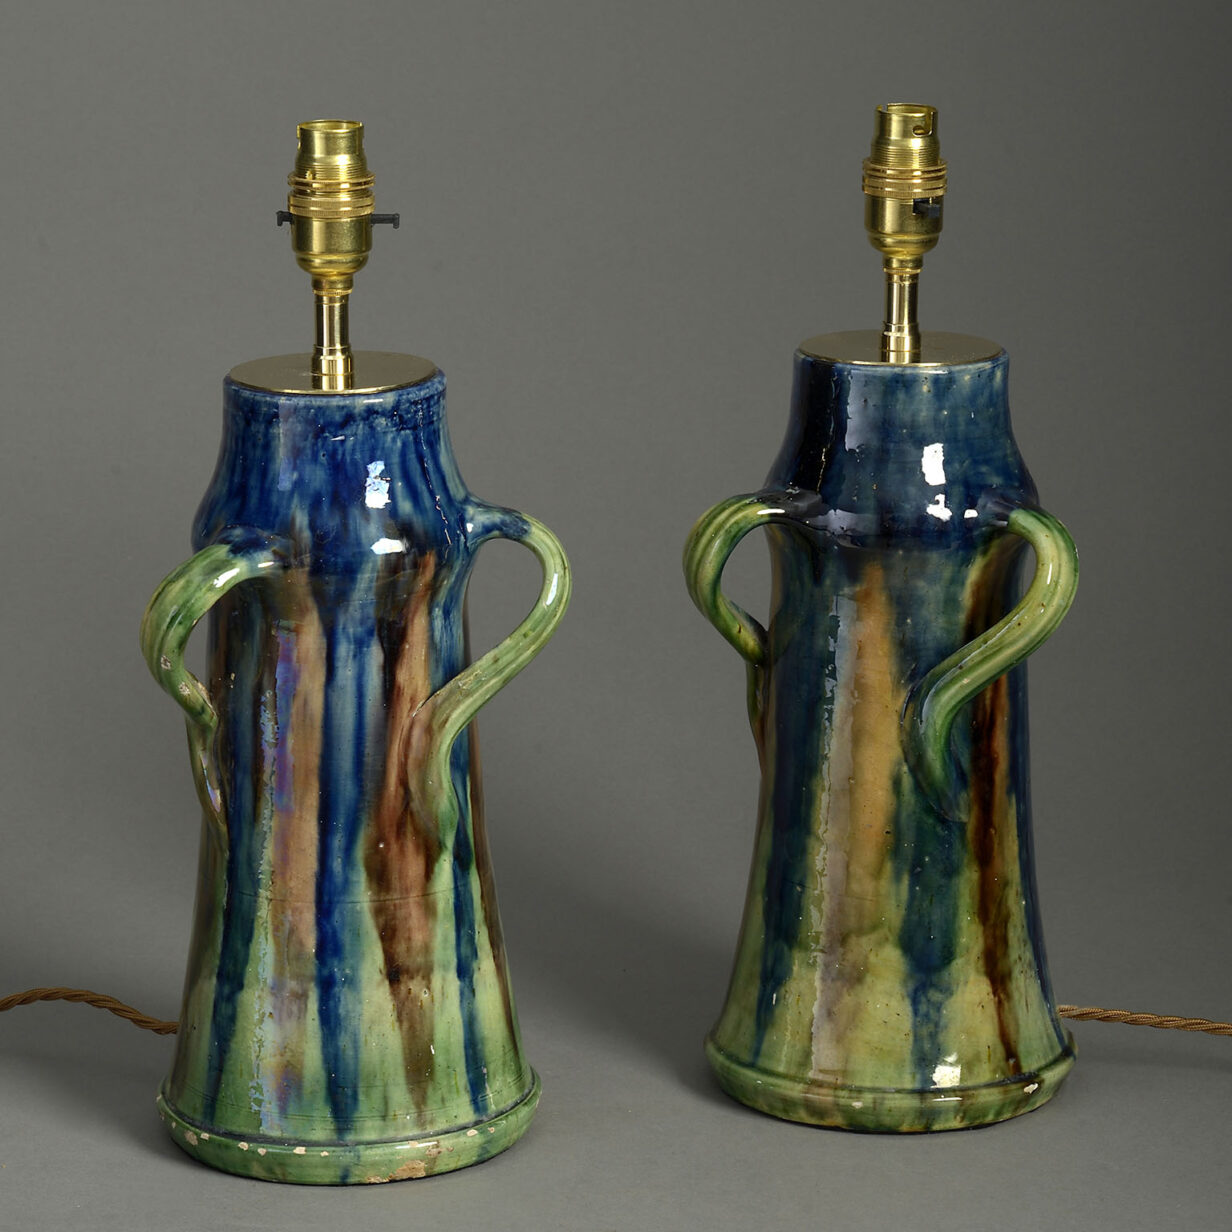 Pair of late 19th century art nouveau pottery vase lamps